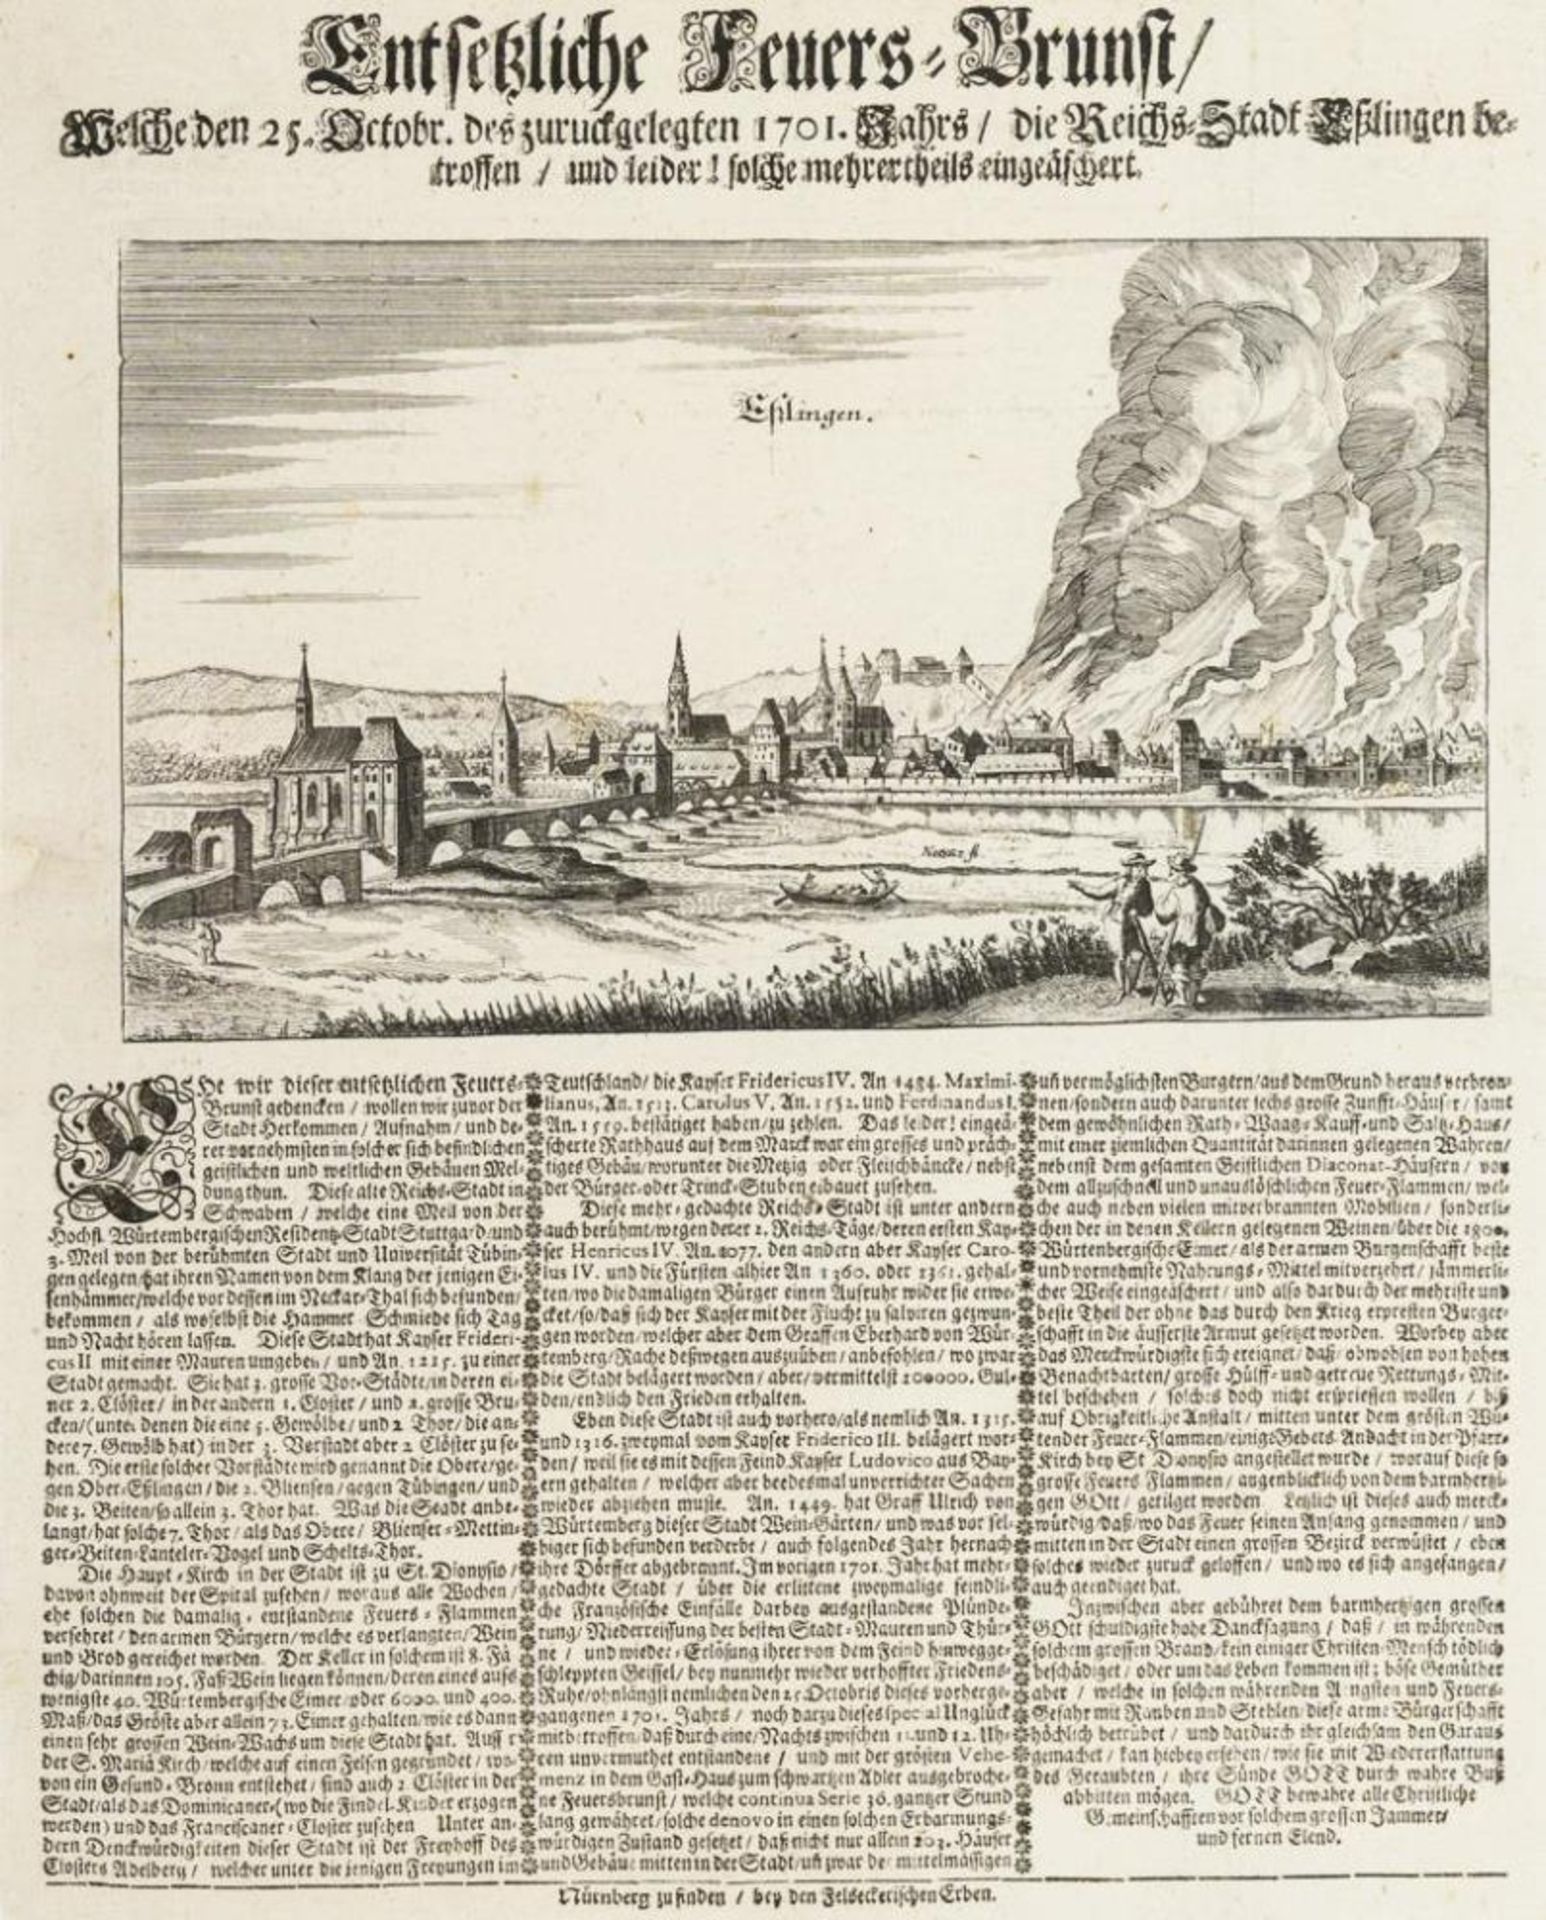 Darstellung des Stadtbrandes in Esslingen im Jahr 1701.